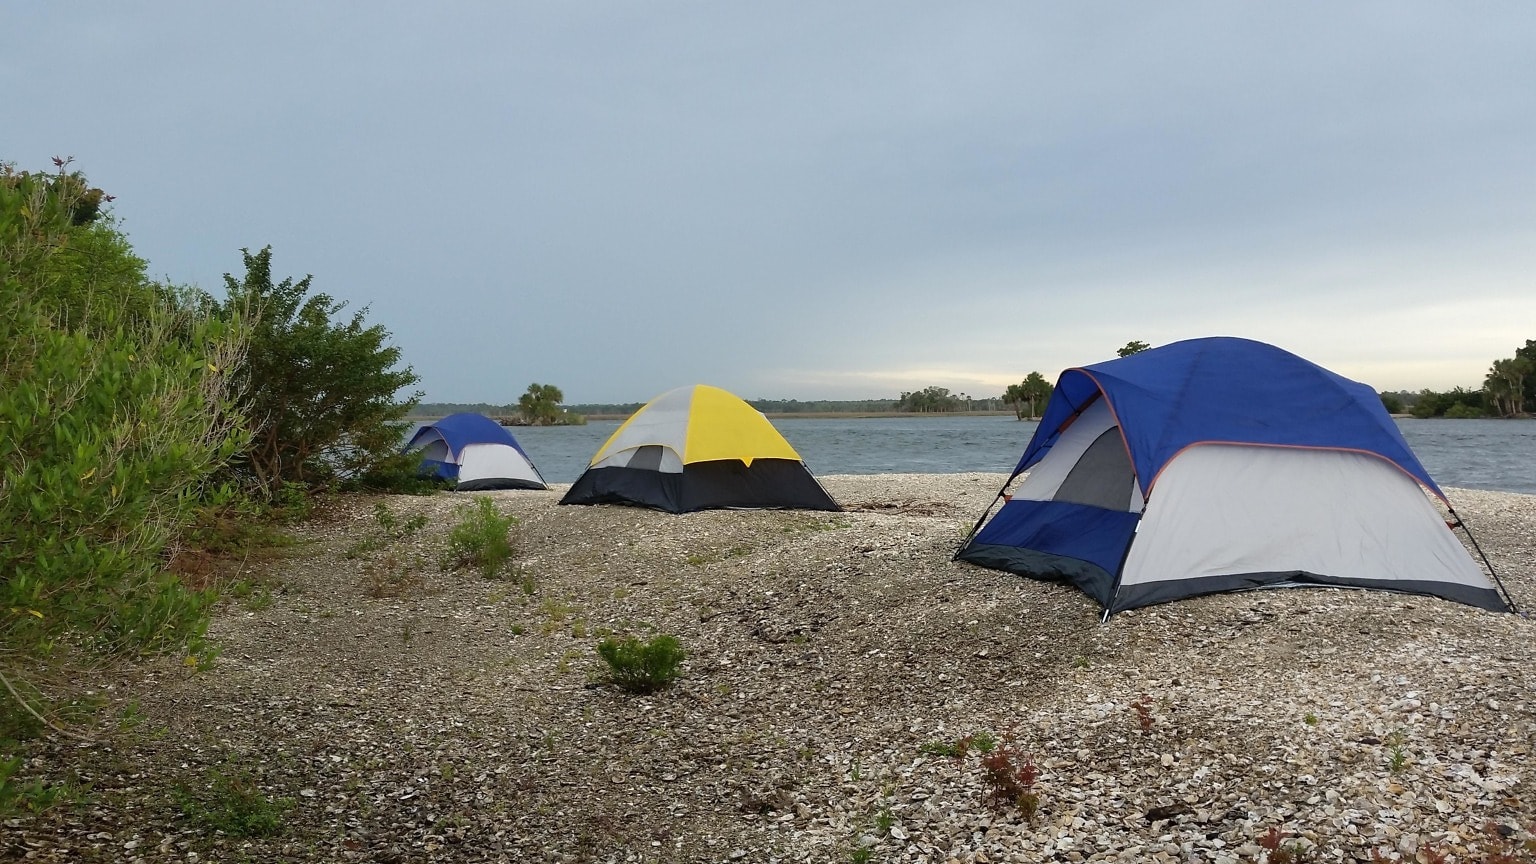 Кемпинг на пляже. Палатка для пляжа. Палатки лагерь на пляже. Палатка квадратная. Big camps